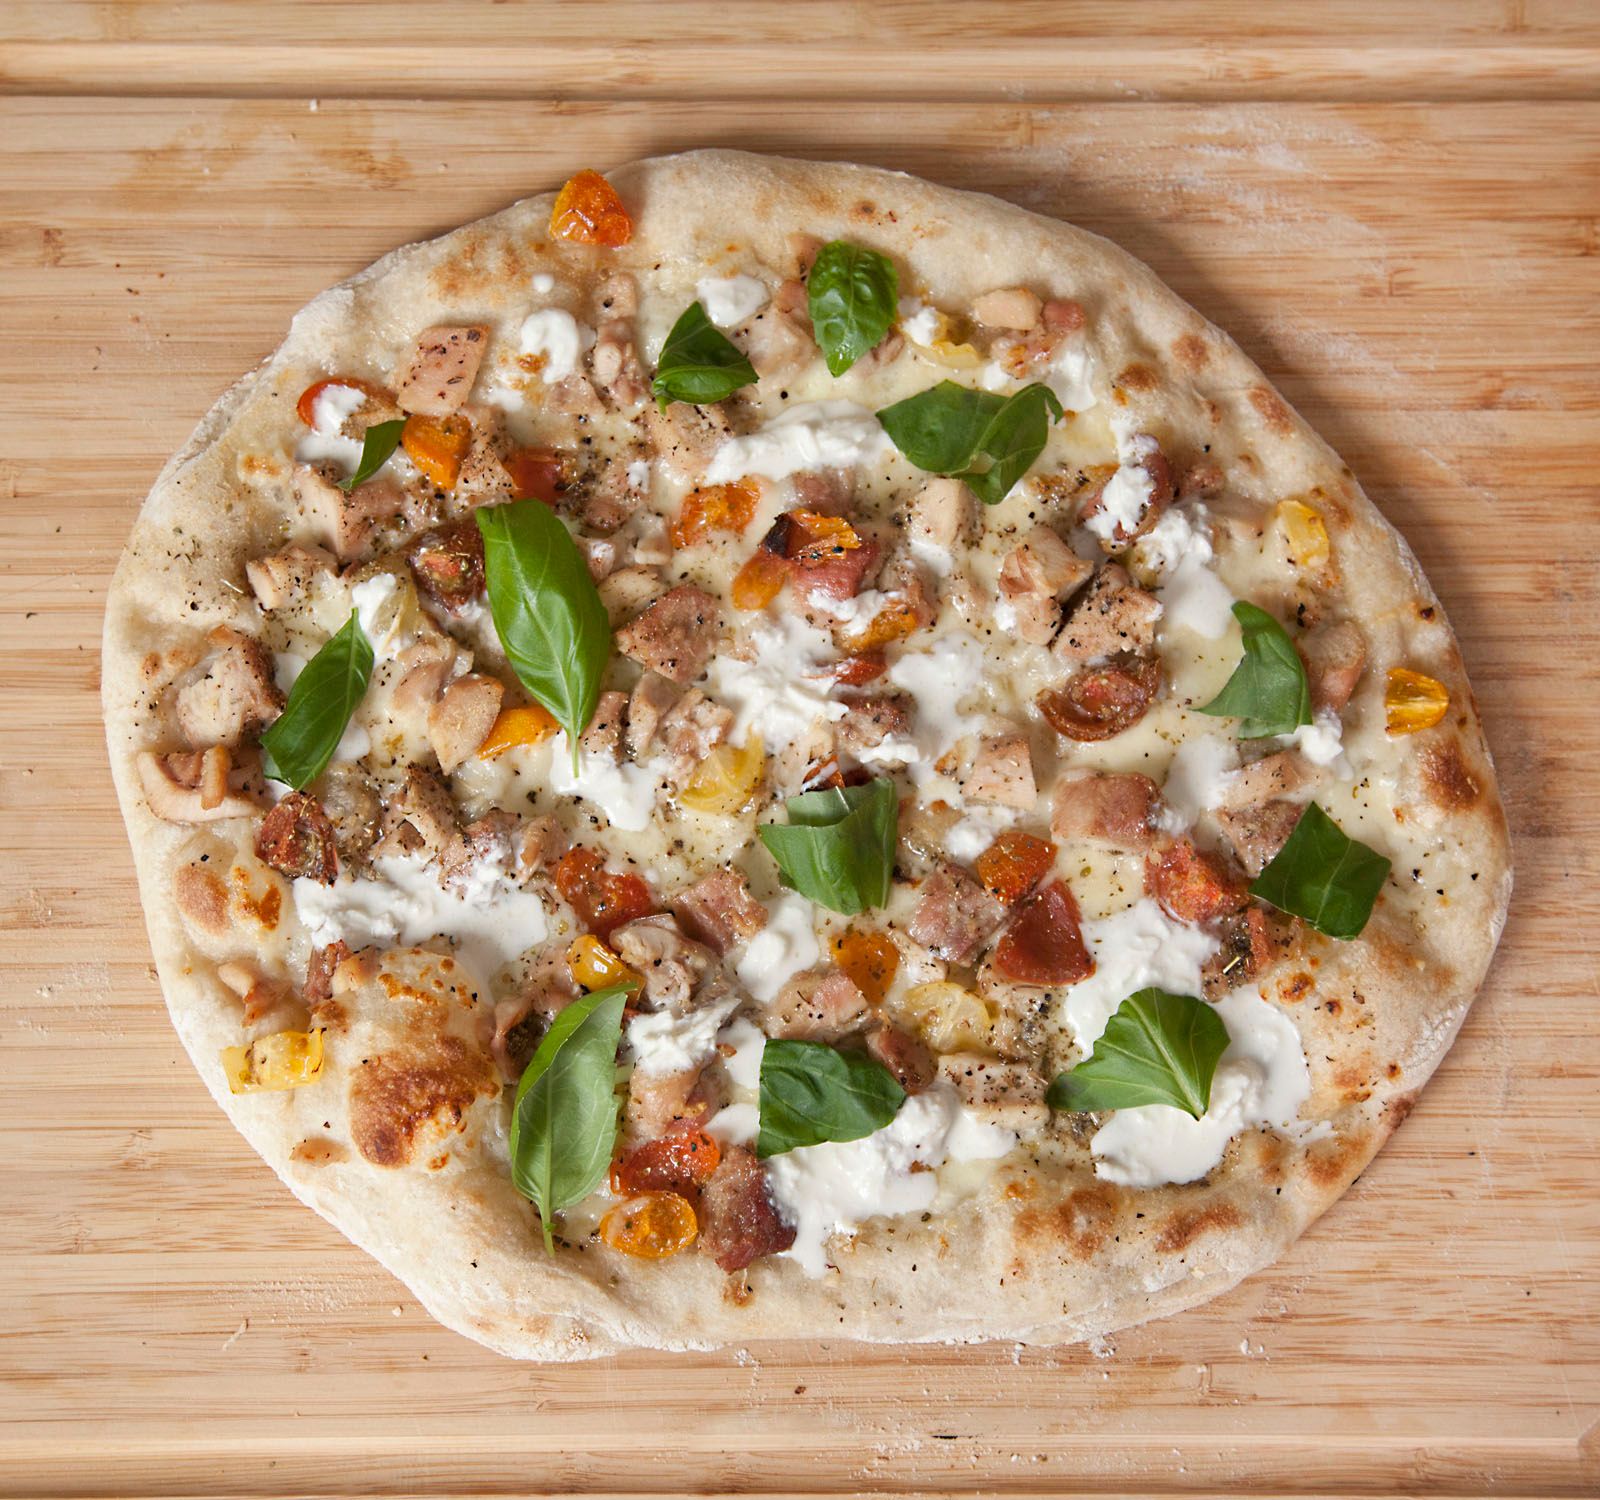 Sourdough White Pizza with Chicken, Tomato & Basil